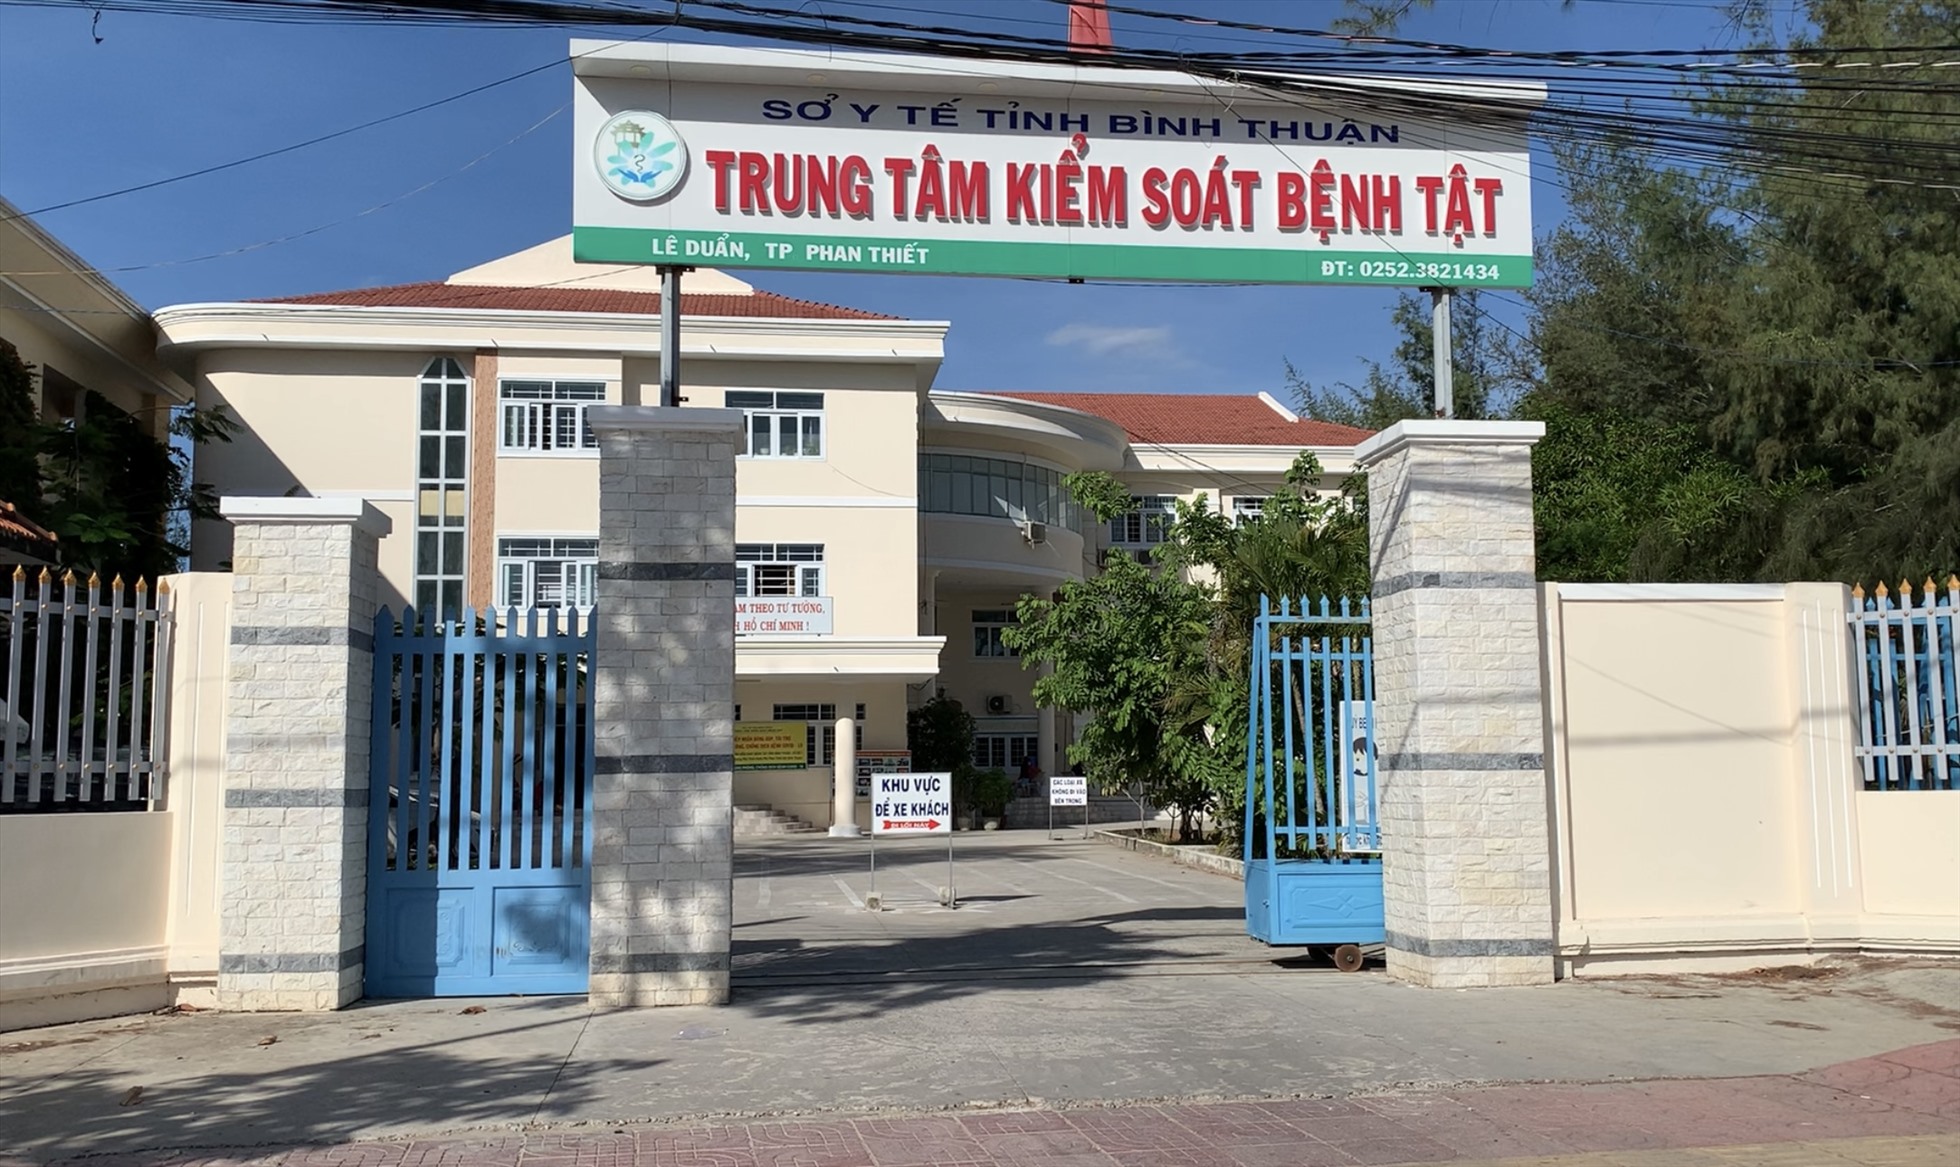 Trung tâm kiểm soát bệnh tật tỉnh Bình Thuận. Ảnh: Duy Tuấn